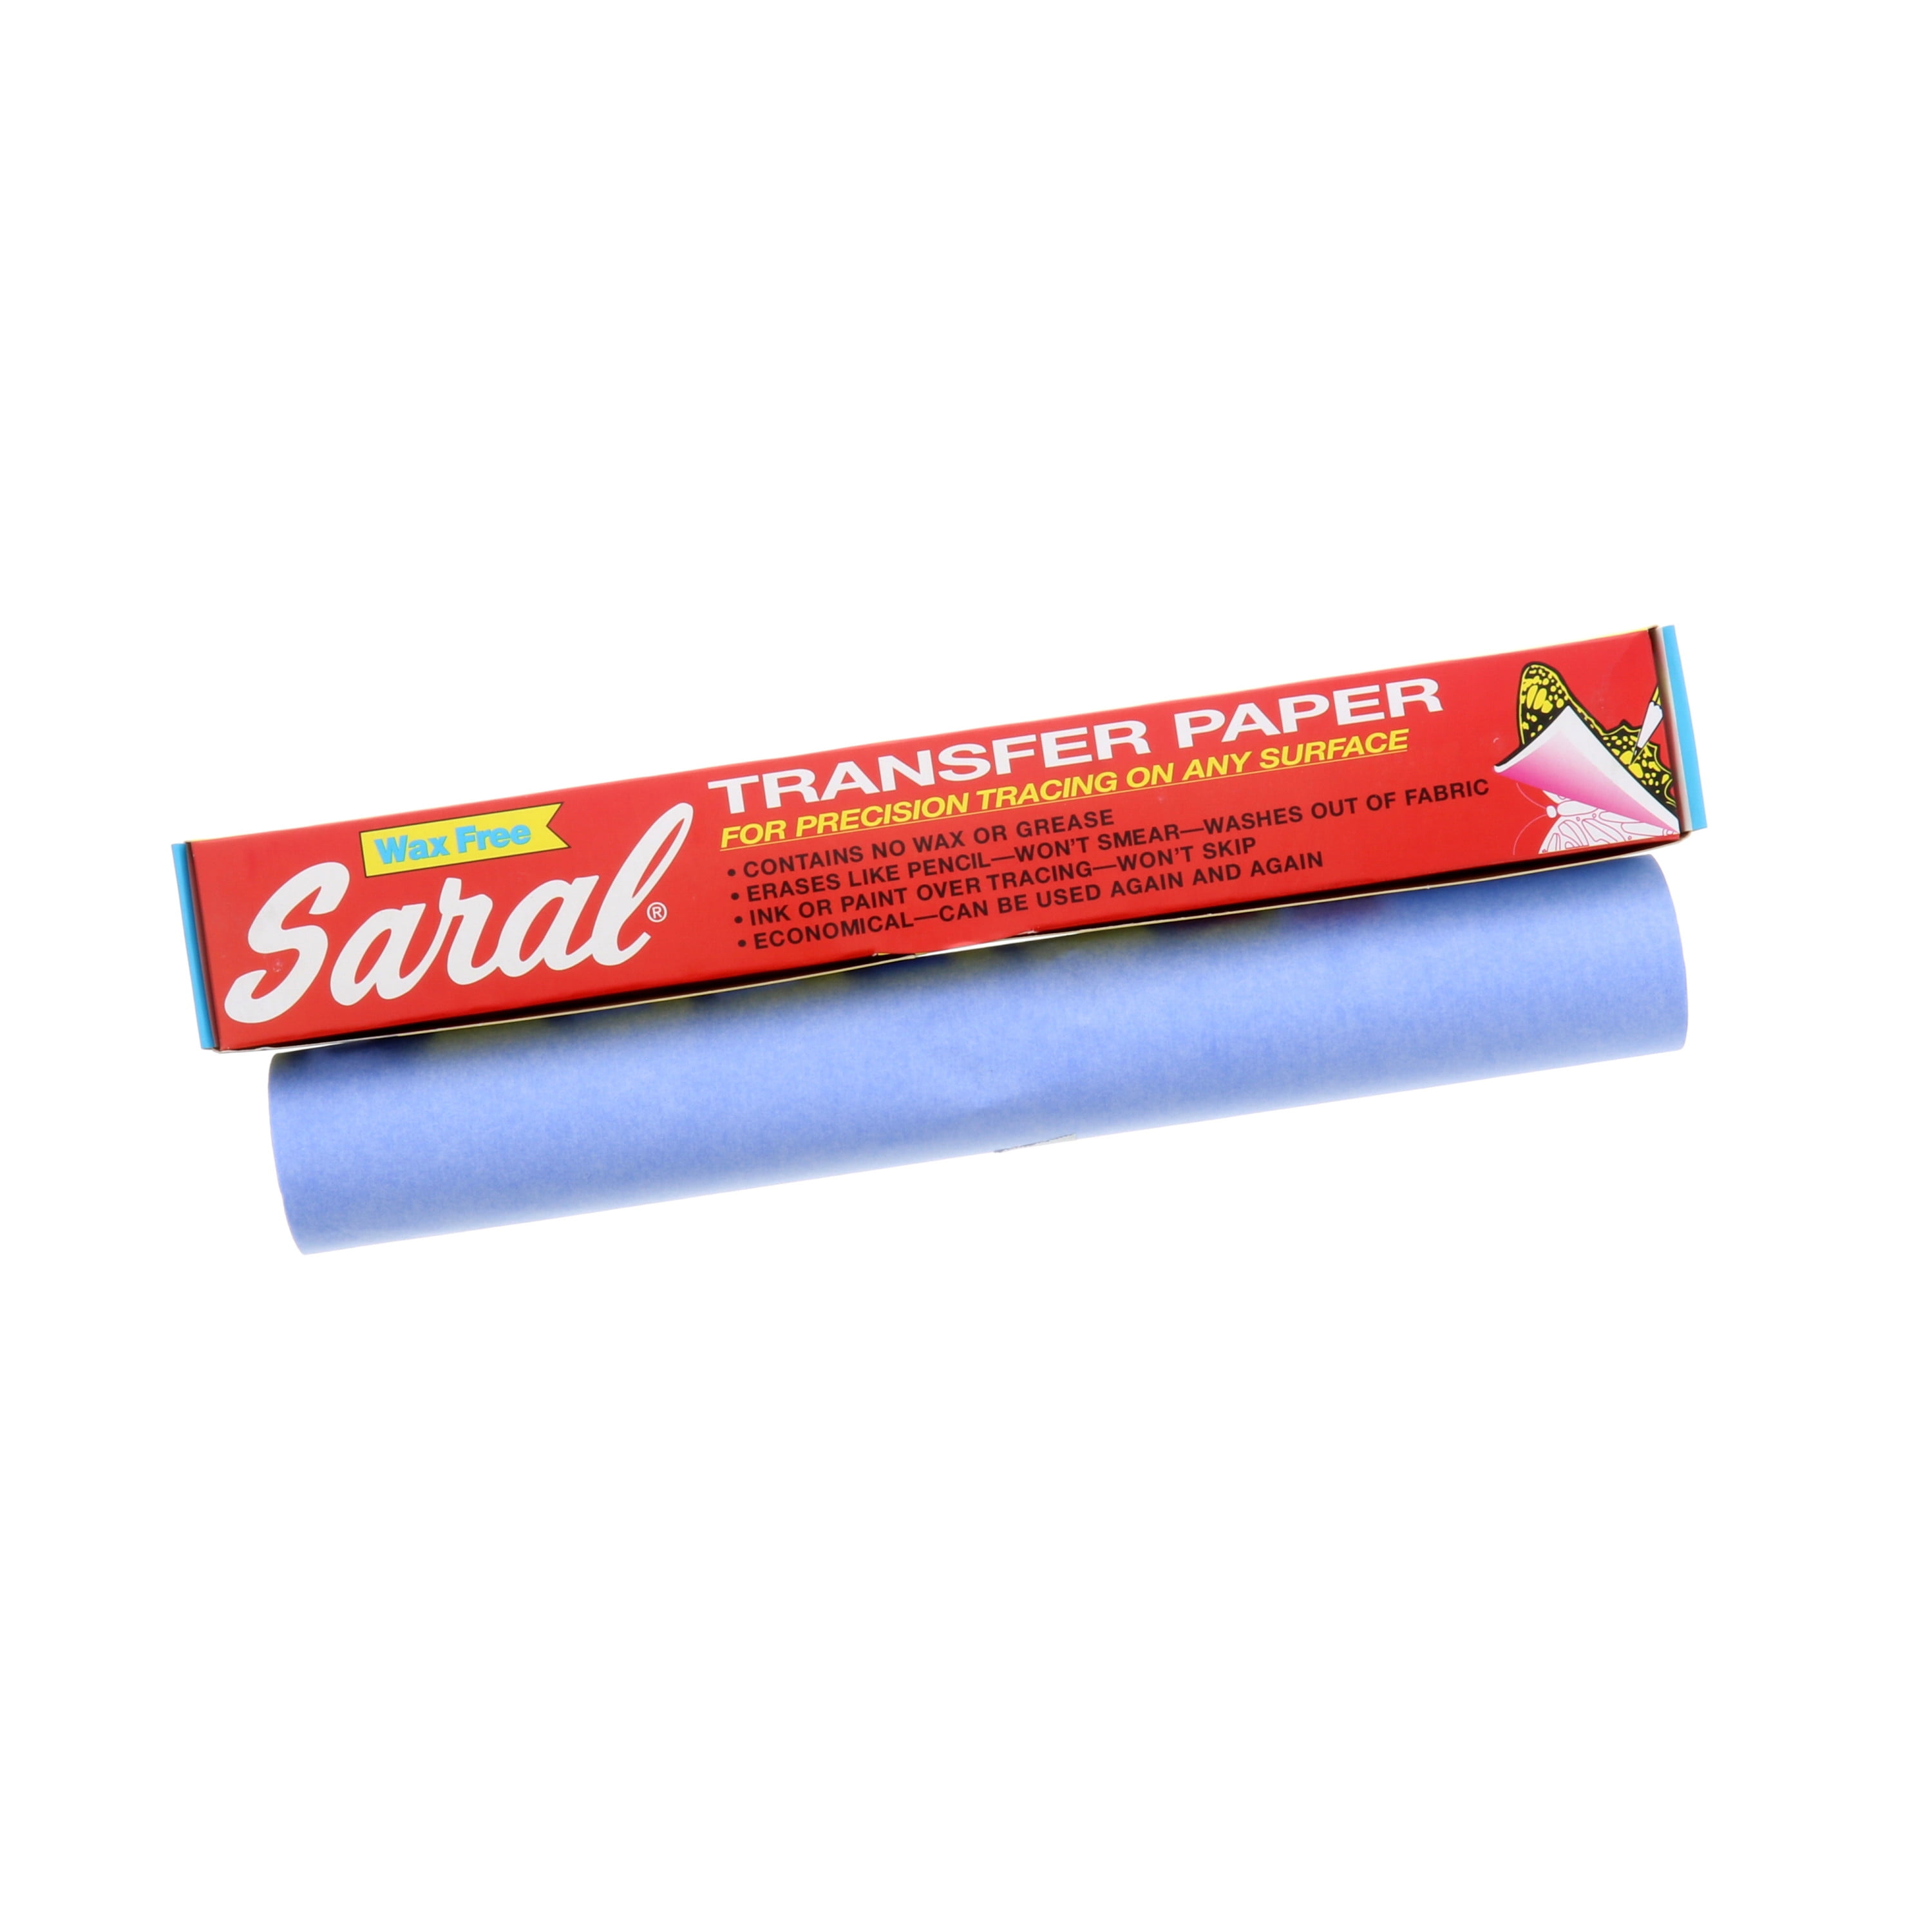 Saral Transfert paper - rol 31,6cmx3,66m - blue - Schleiper - e-shop express